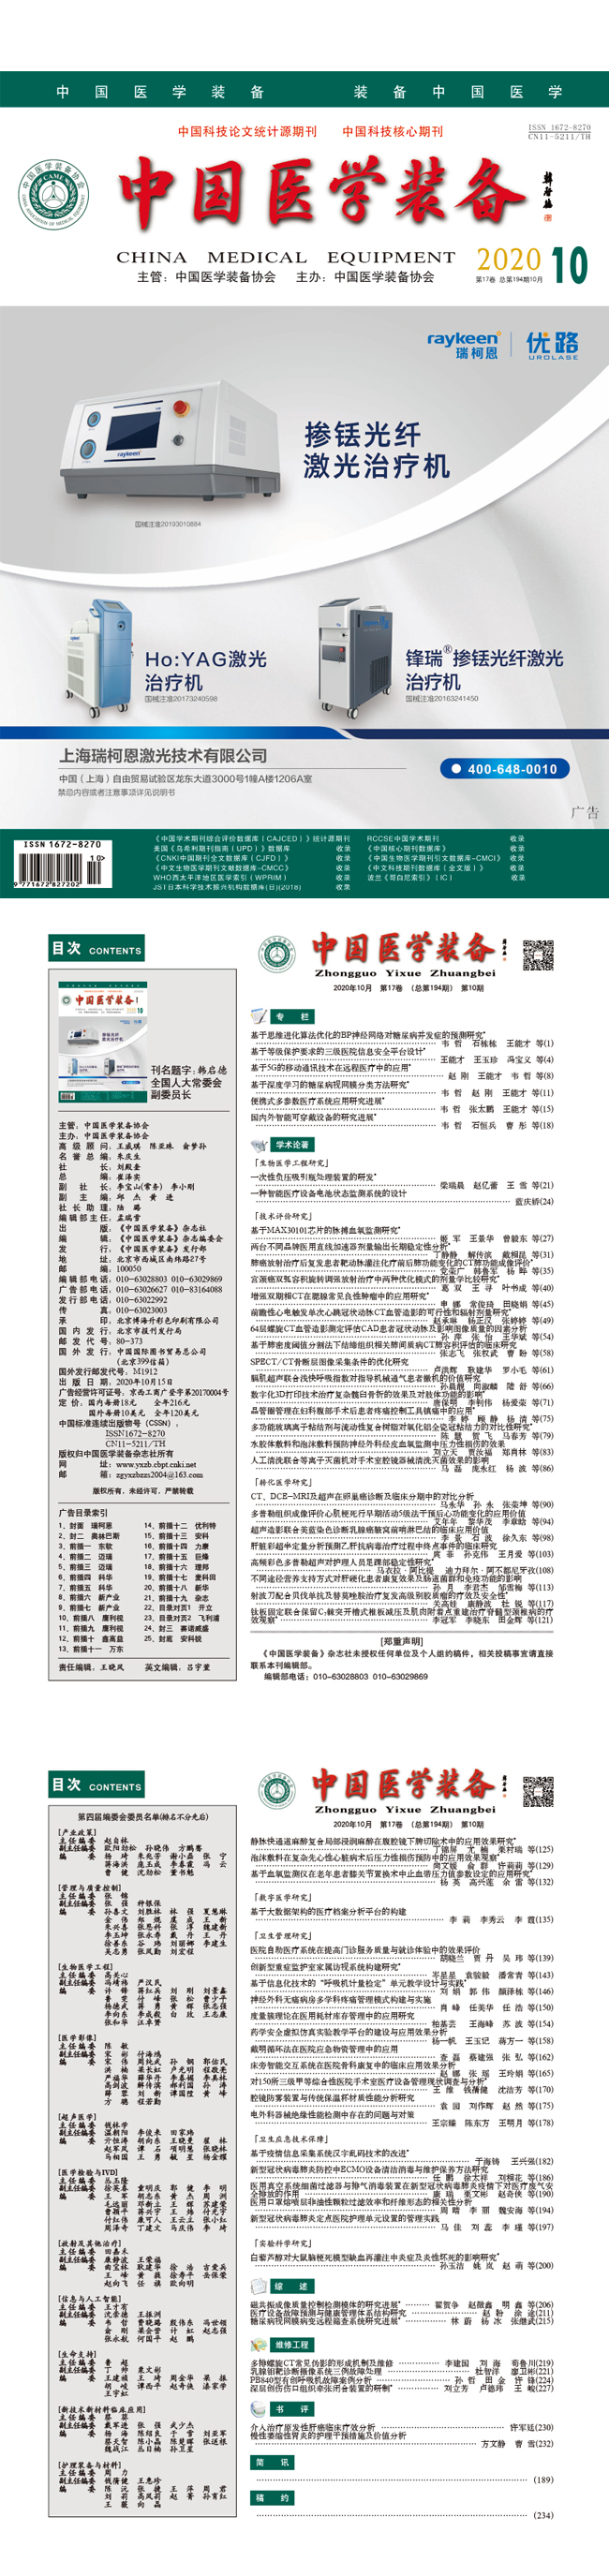 《中国医学装备》2020年10期出版(图1)